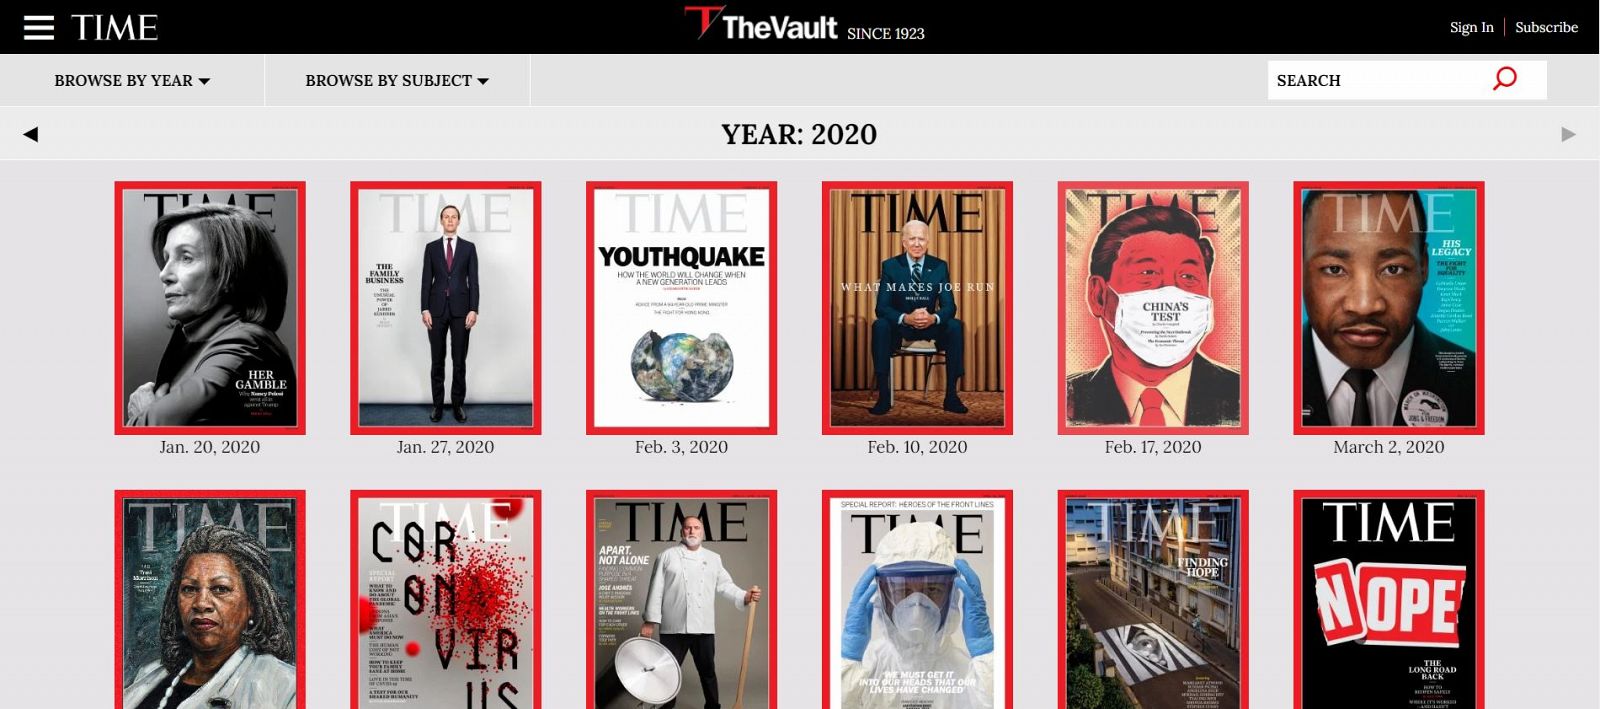 En la propia página de "Time" en la sección "The Vault", podemos consultar las portadas publicadas por la revista desde 1923